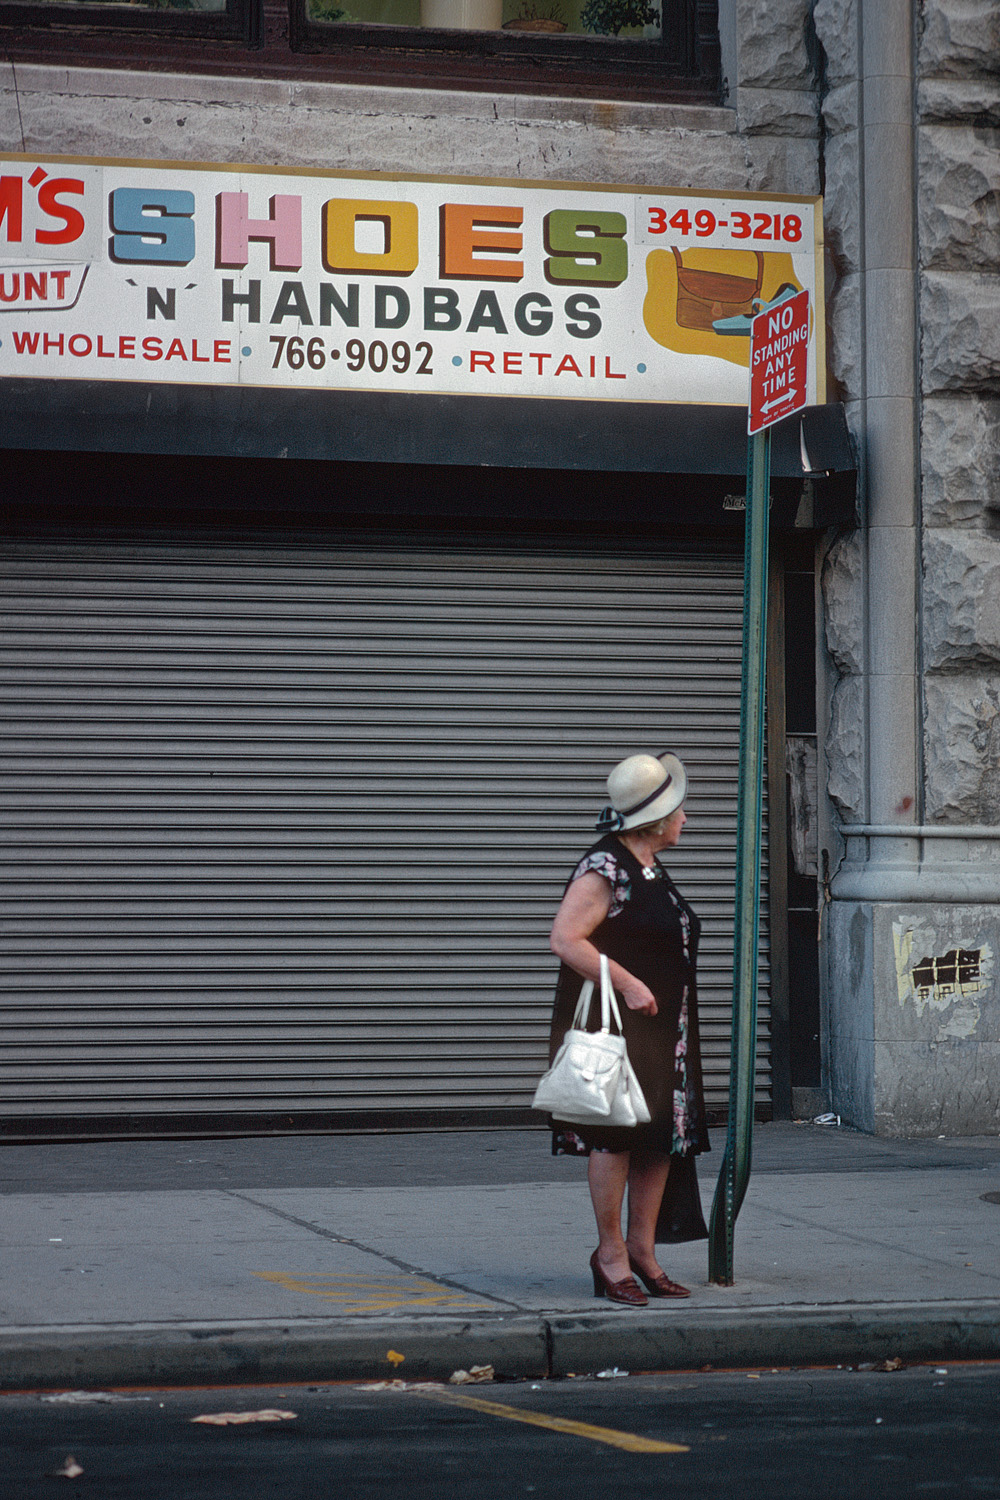 bill-hocker-handbags-new-york-new-york-1980